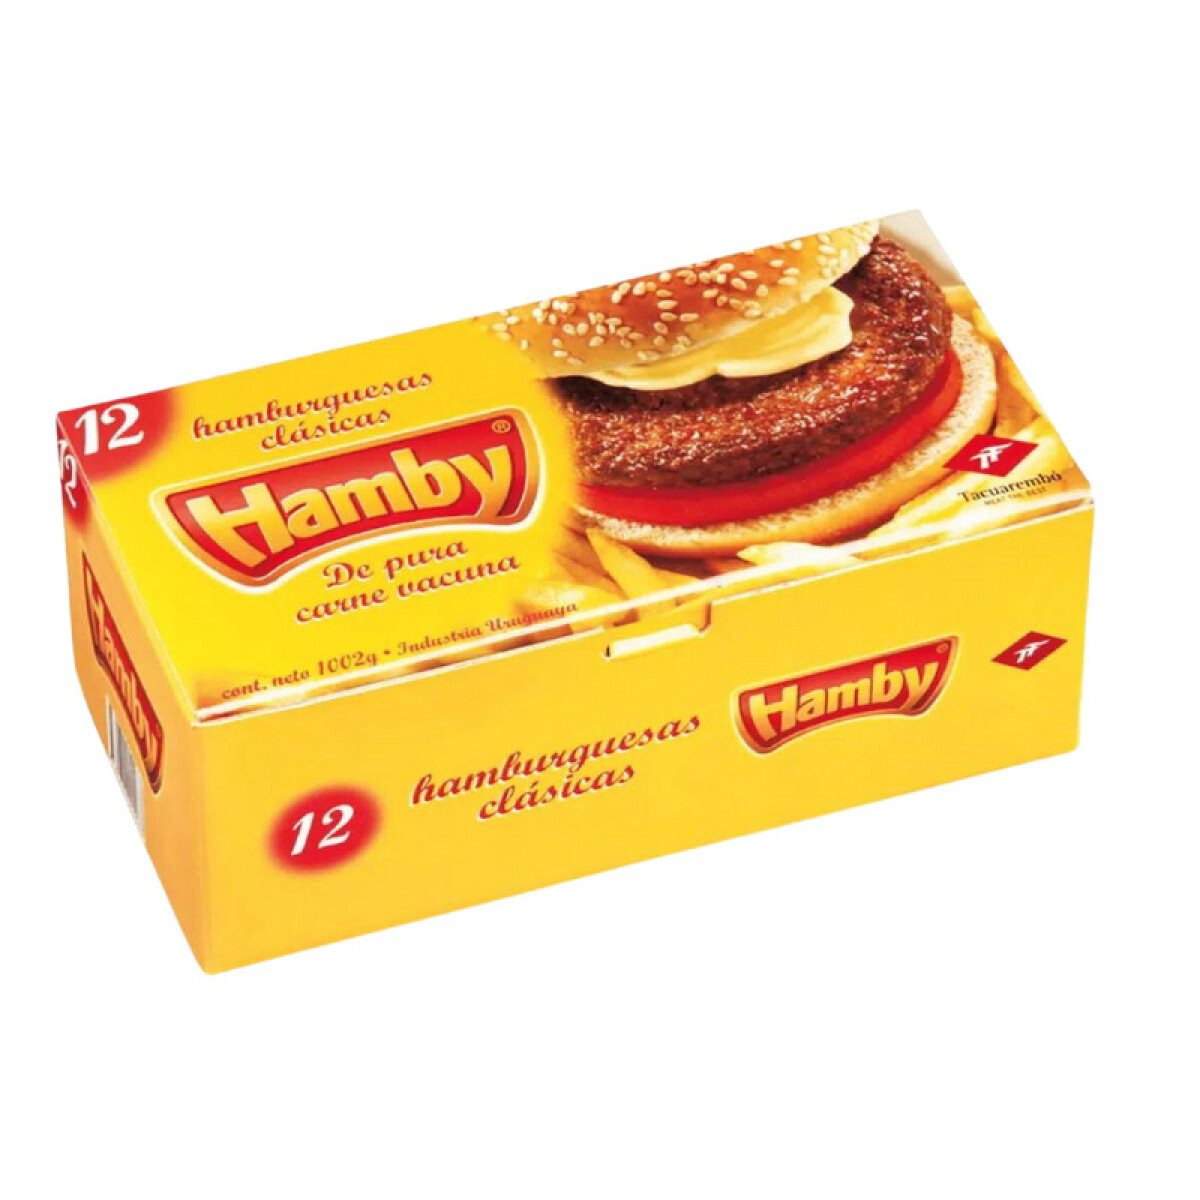 Hamburguesa Hamby - 12 uds. - 1 kg 